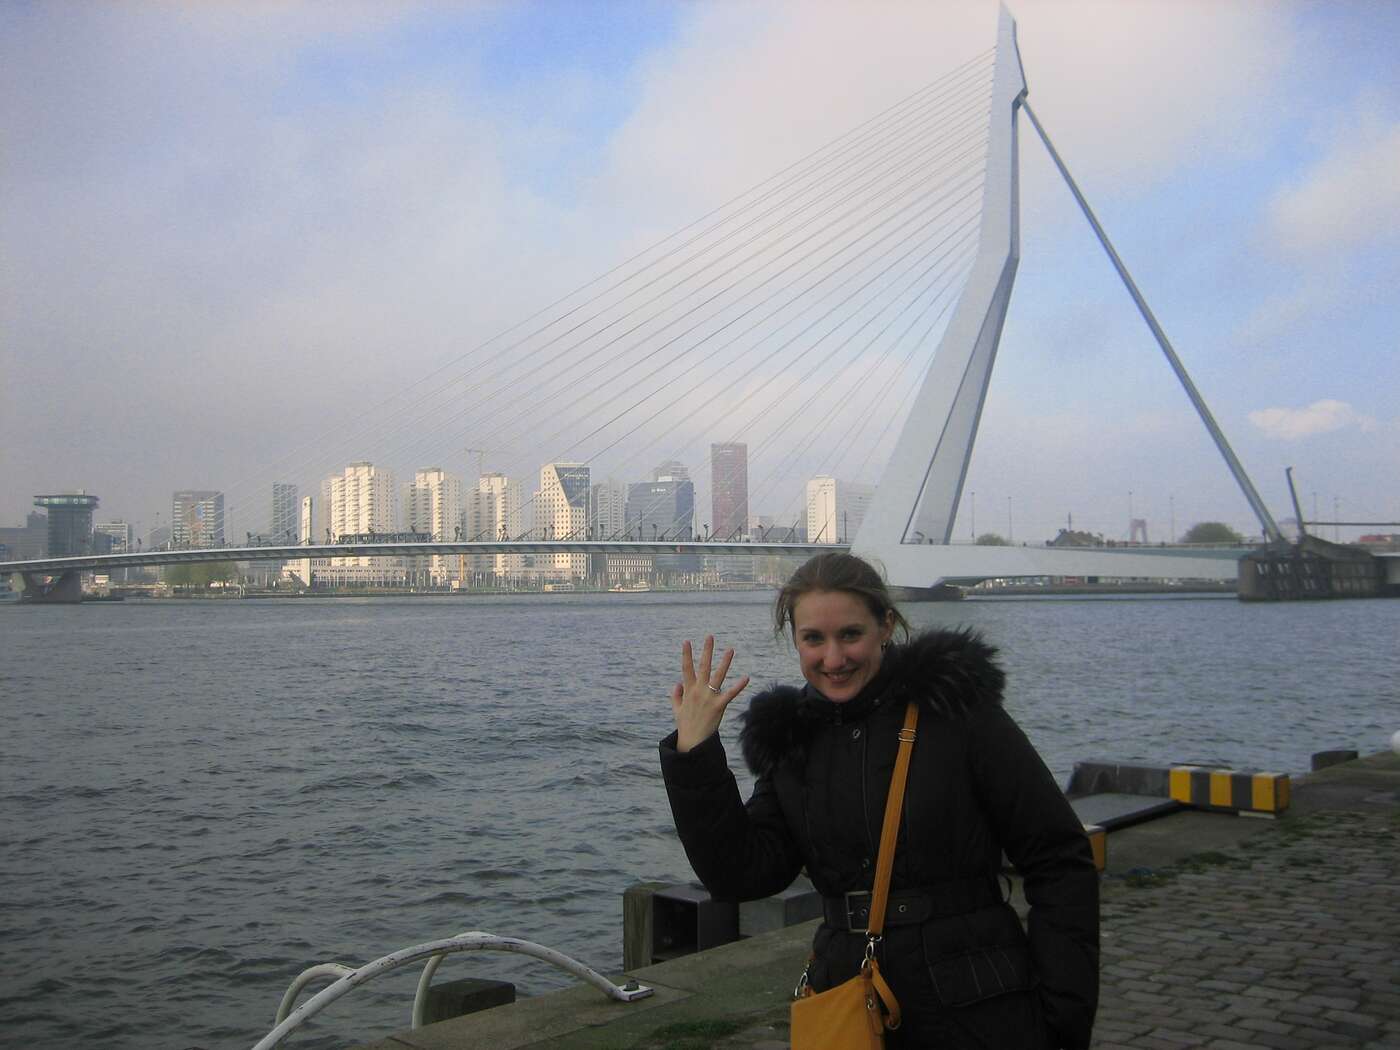 Asking for marriage at Erasmus bridge (Rotterdam)